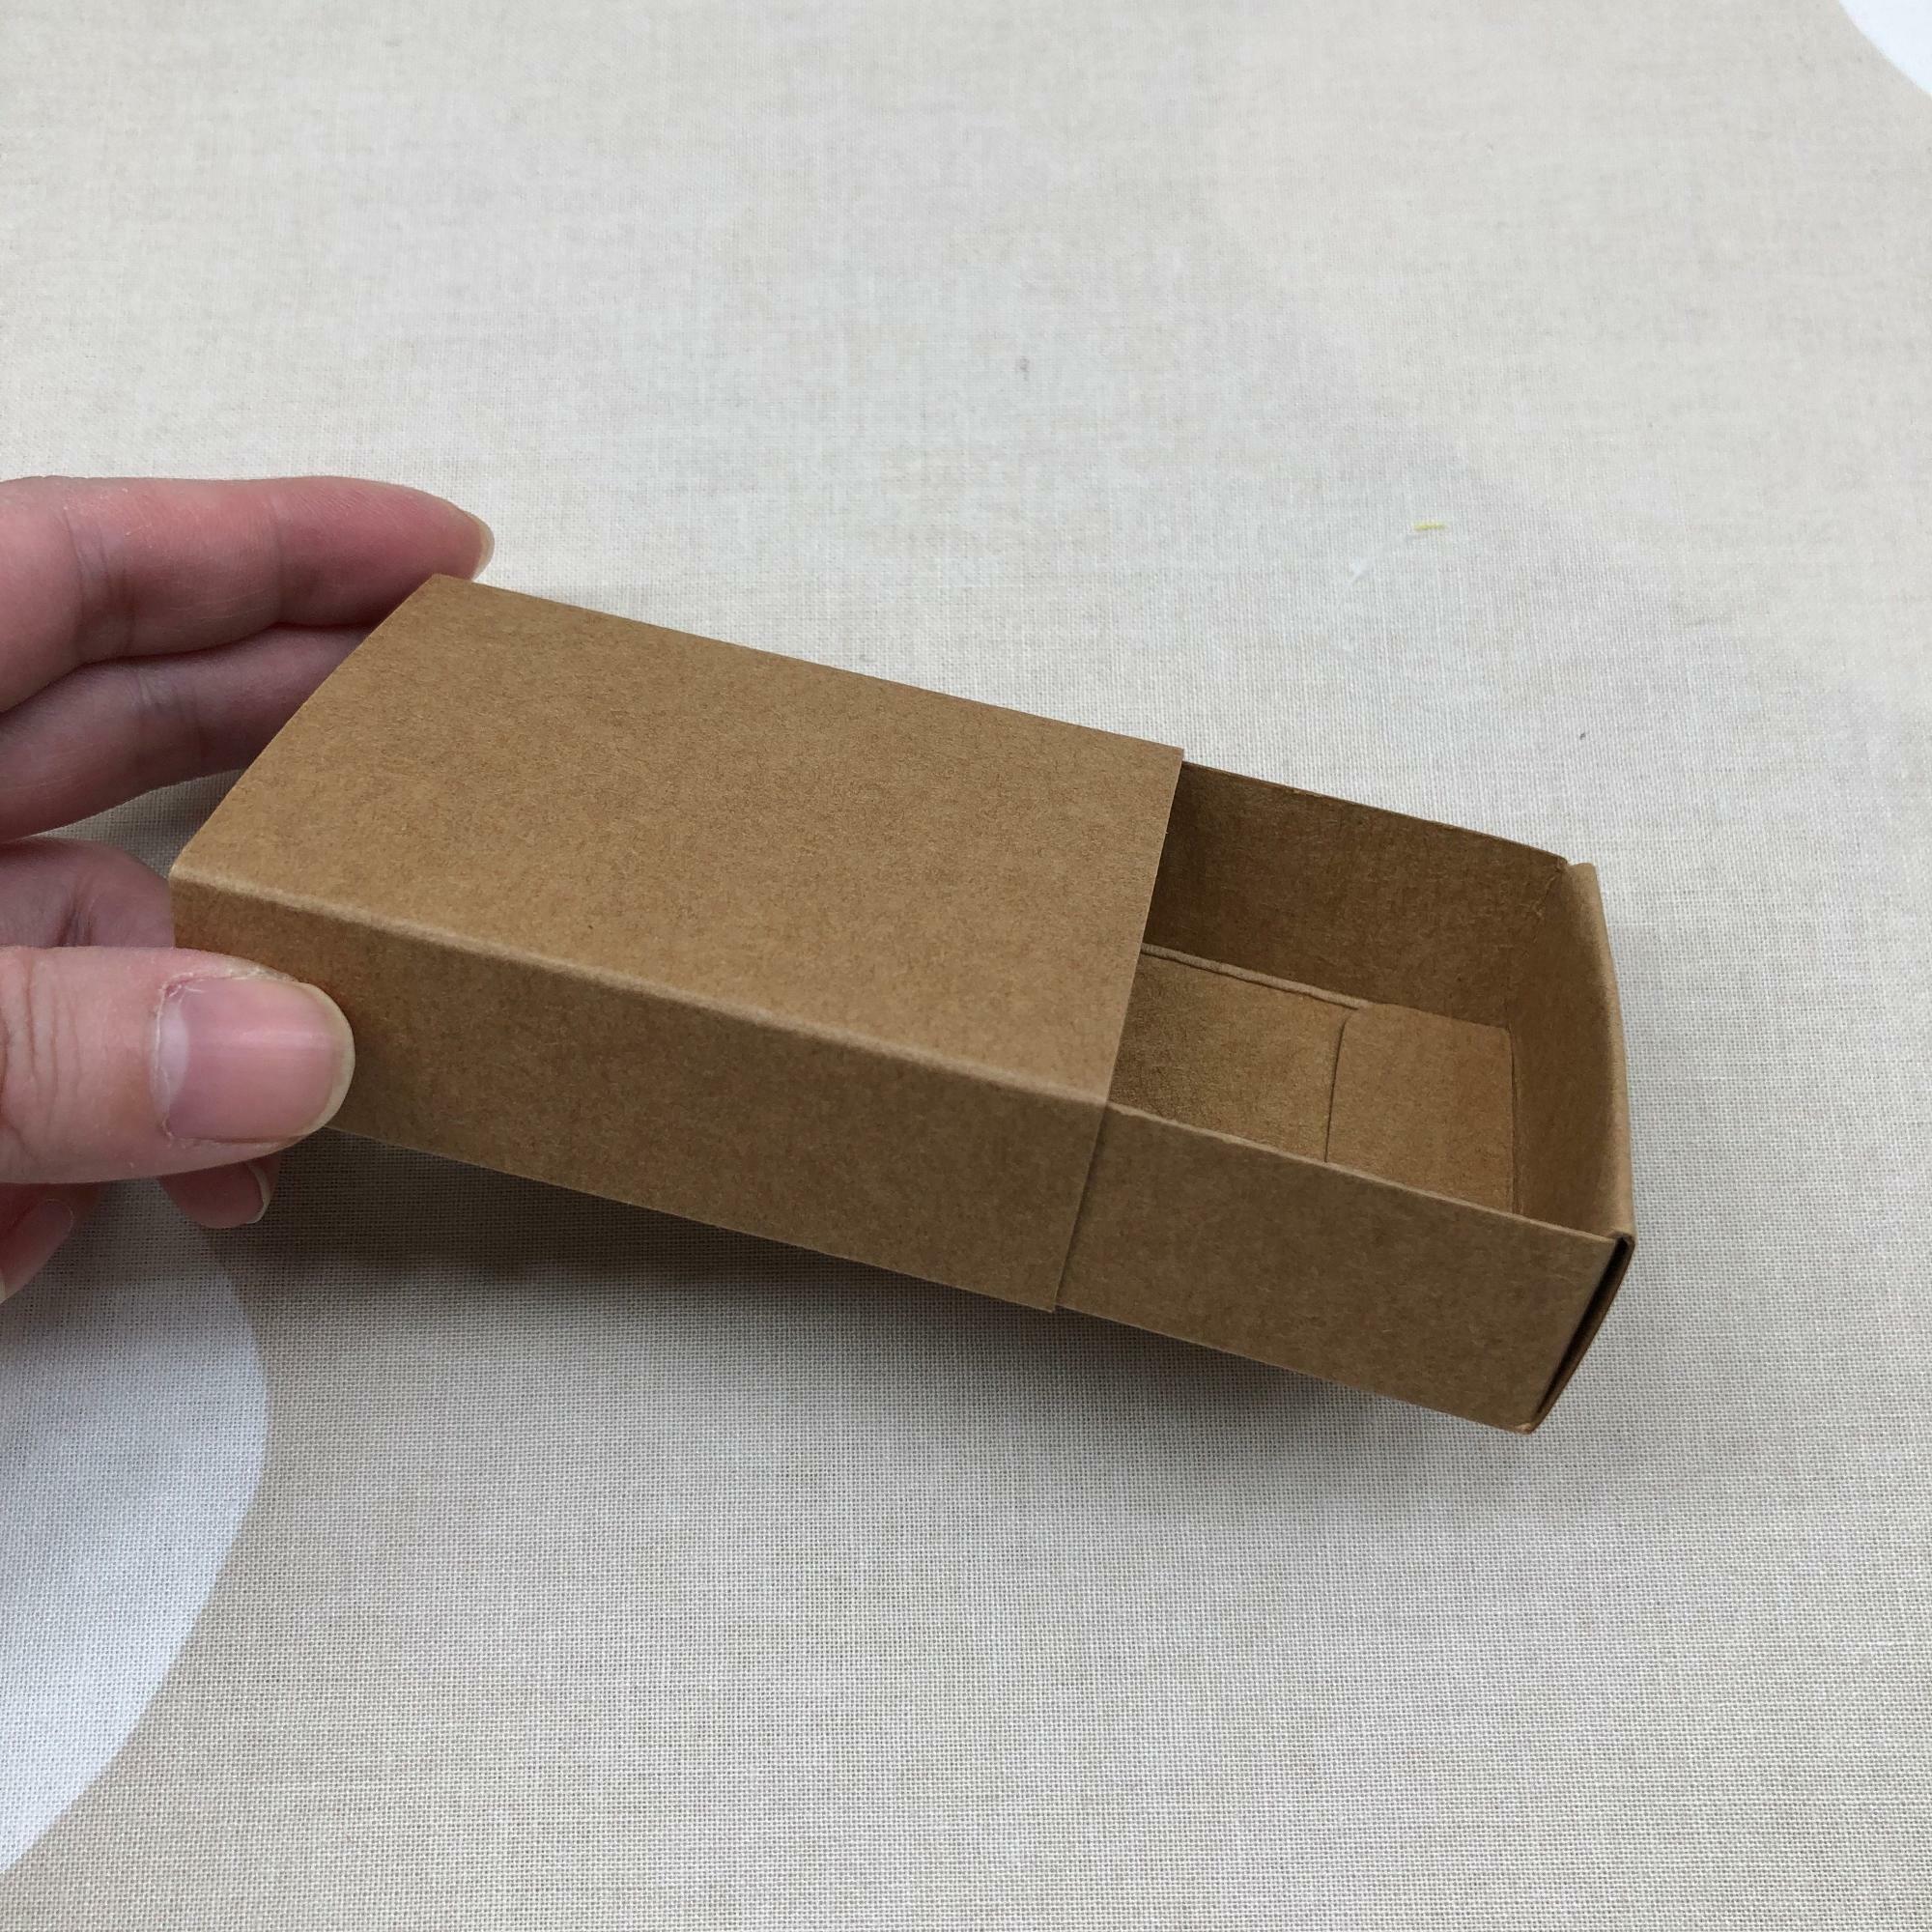 マッチ箱のような形のスライド式の箱です